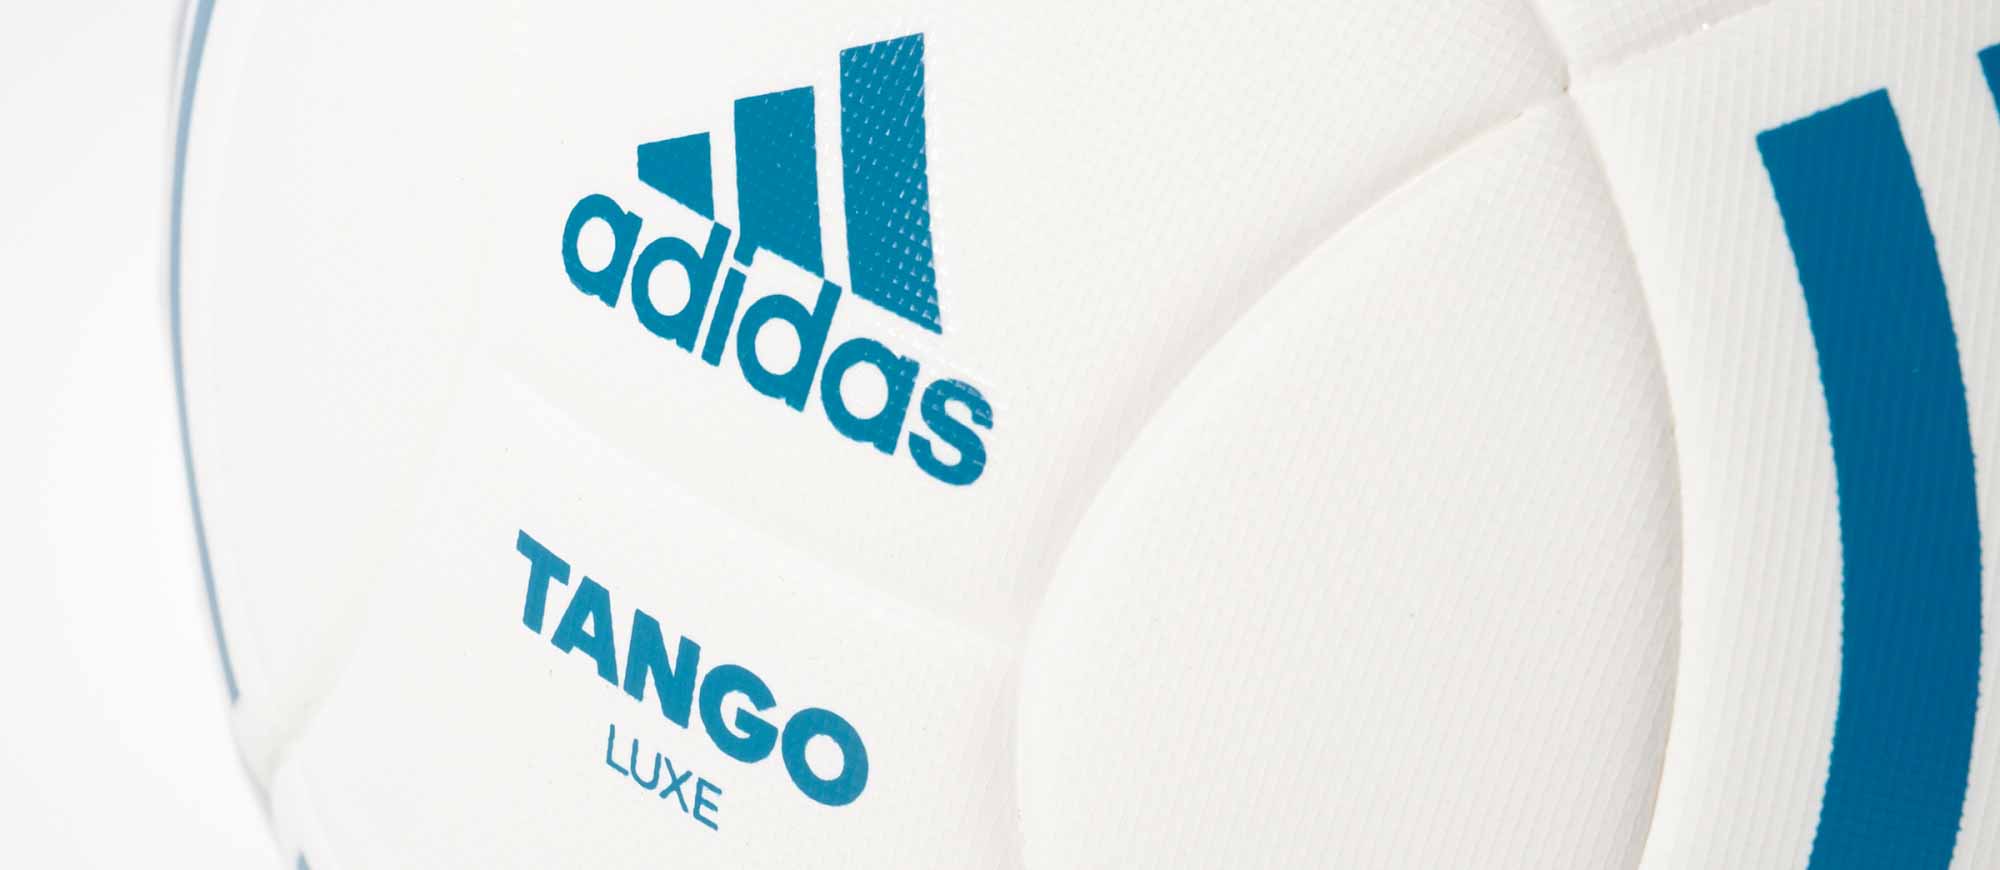 adidas Tango Luxe Match Soccer Ball - SoccerPro